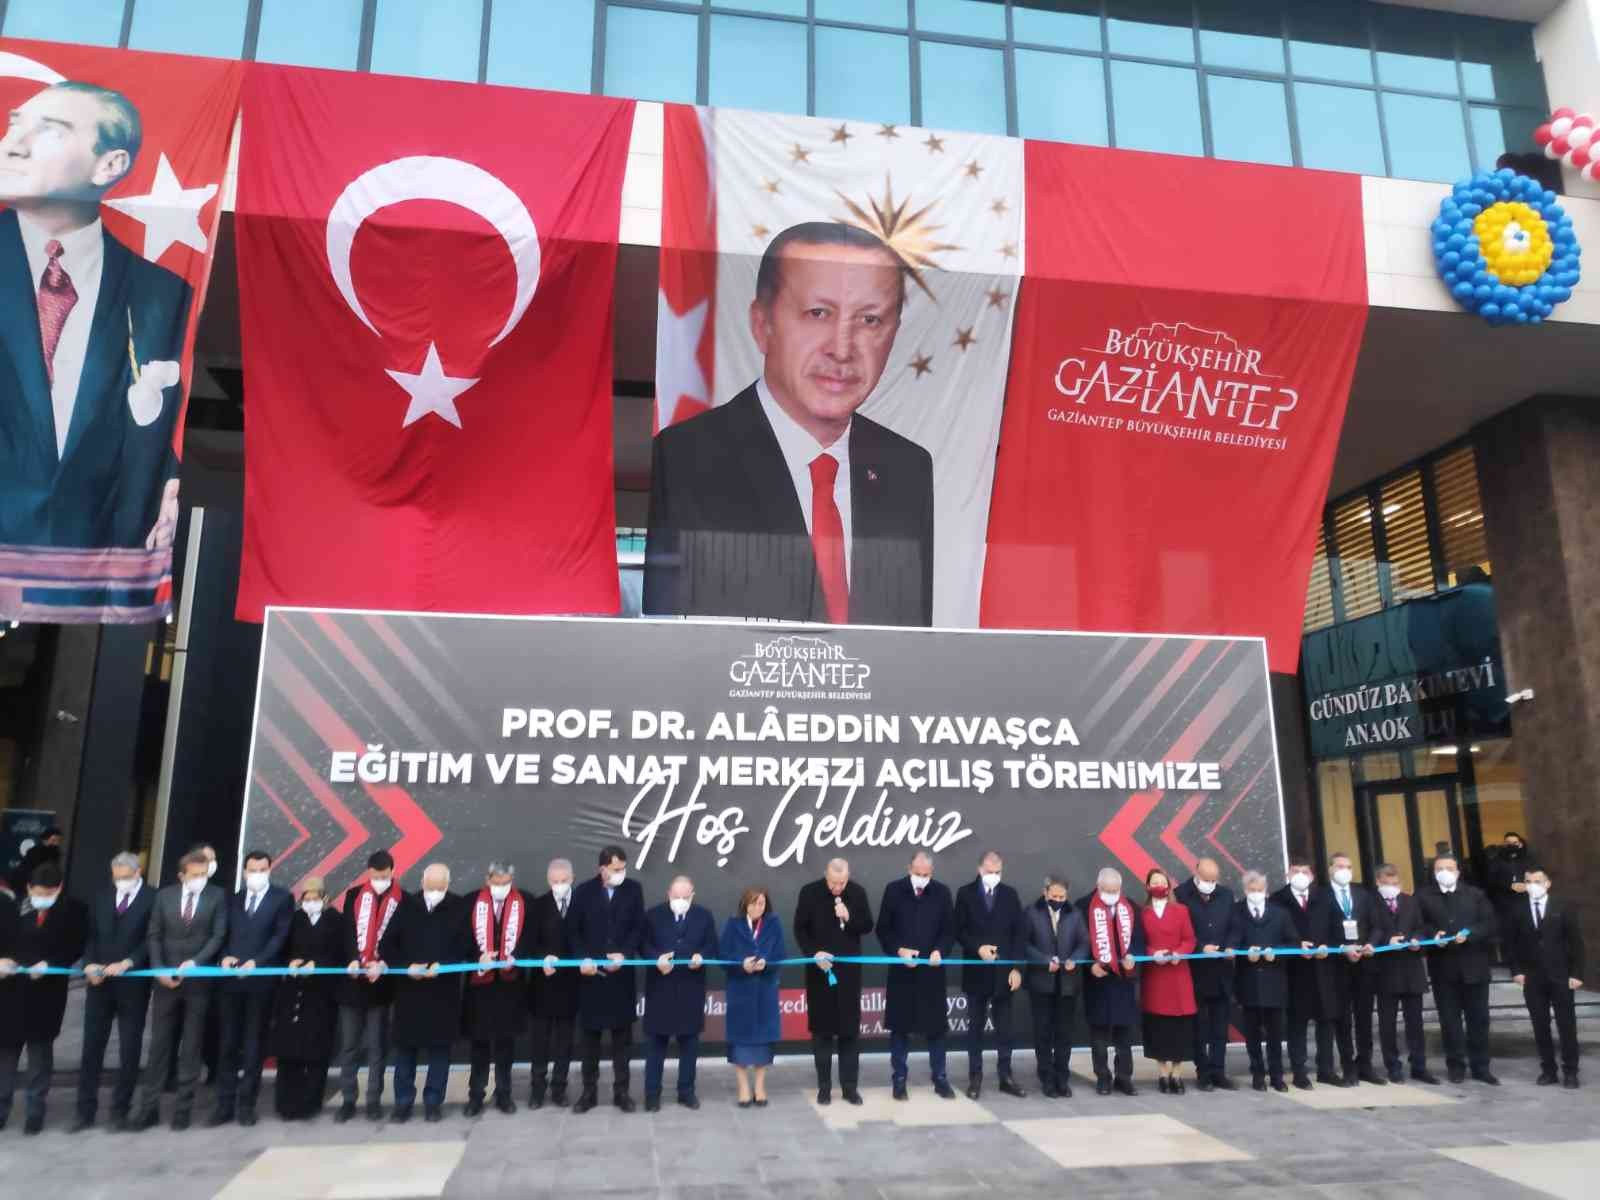 Cumhurbaşkanı Erdoğan, Prof. Dr. Alâeddin Yavaşca Kurs Merkezi’nin açılışını yaptı #gaziantep